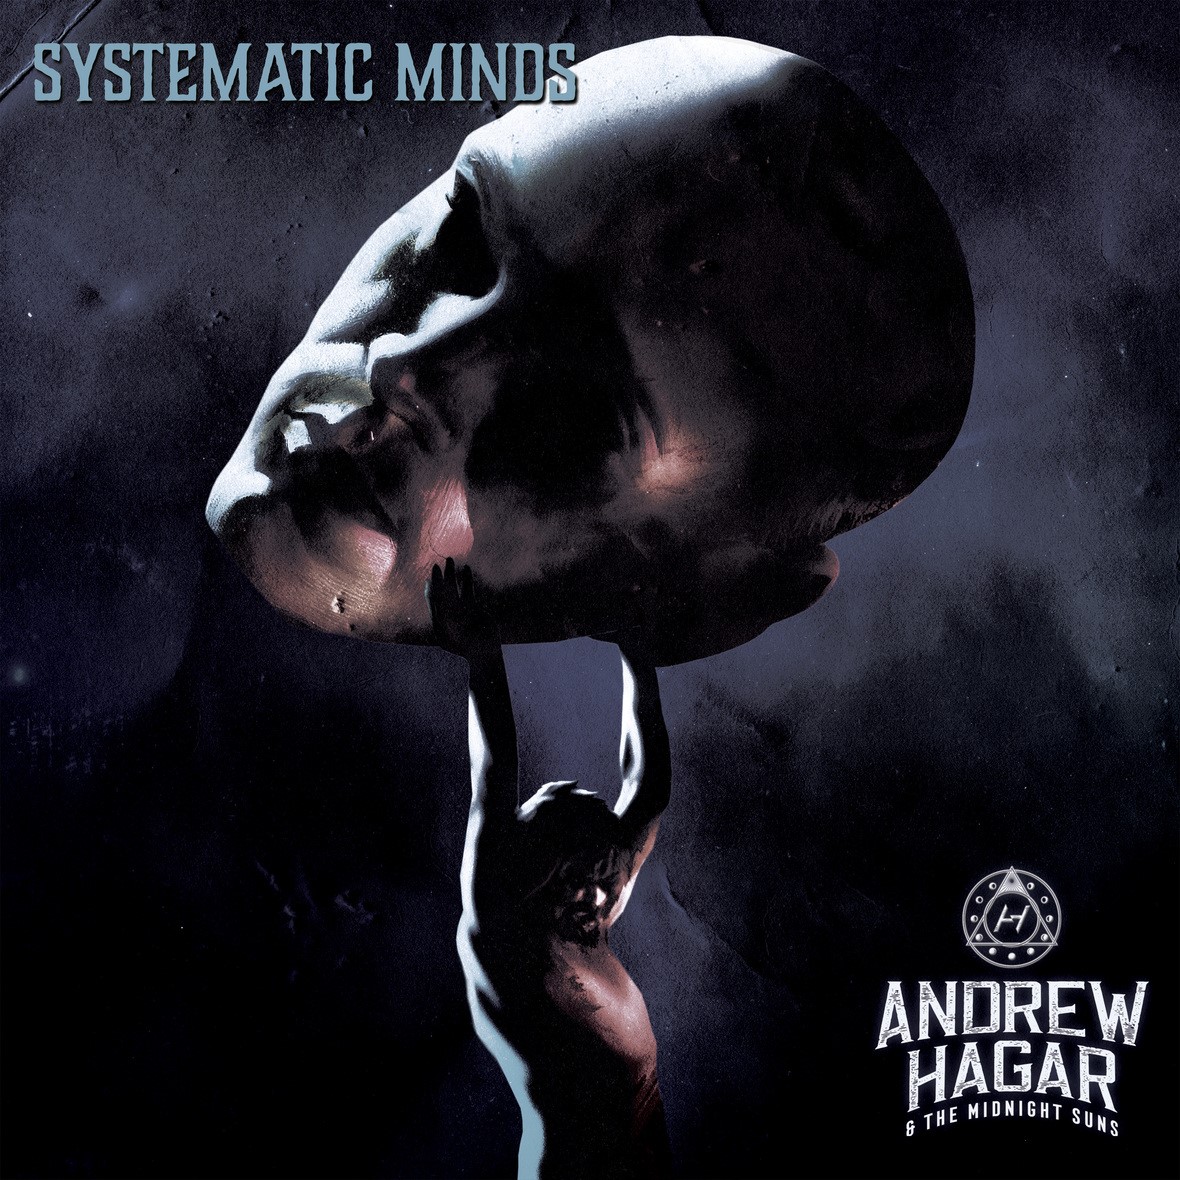 Listen To "Systematic Minds" By Sammy Hagar's Son Andrew Hagar